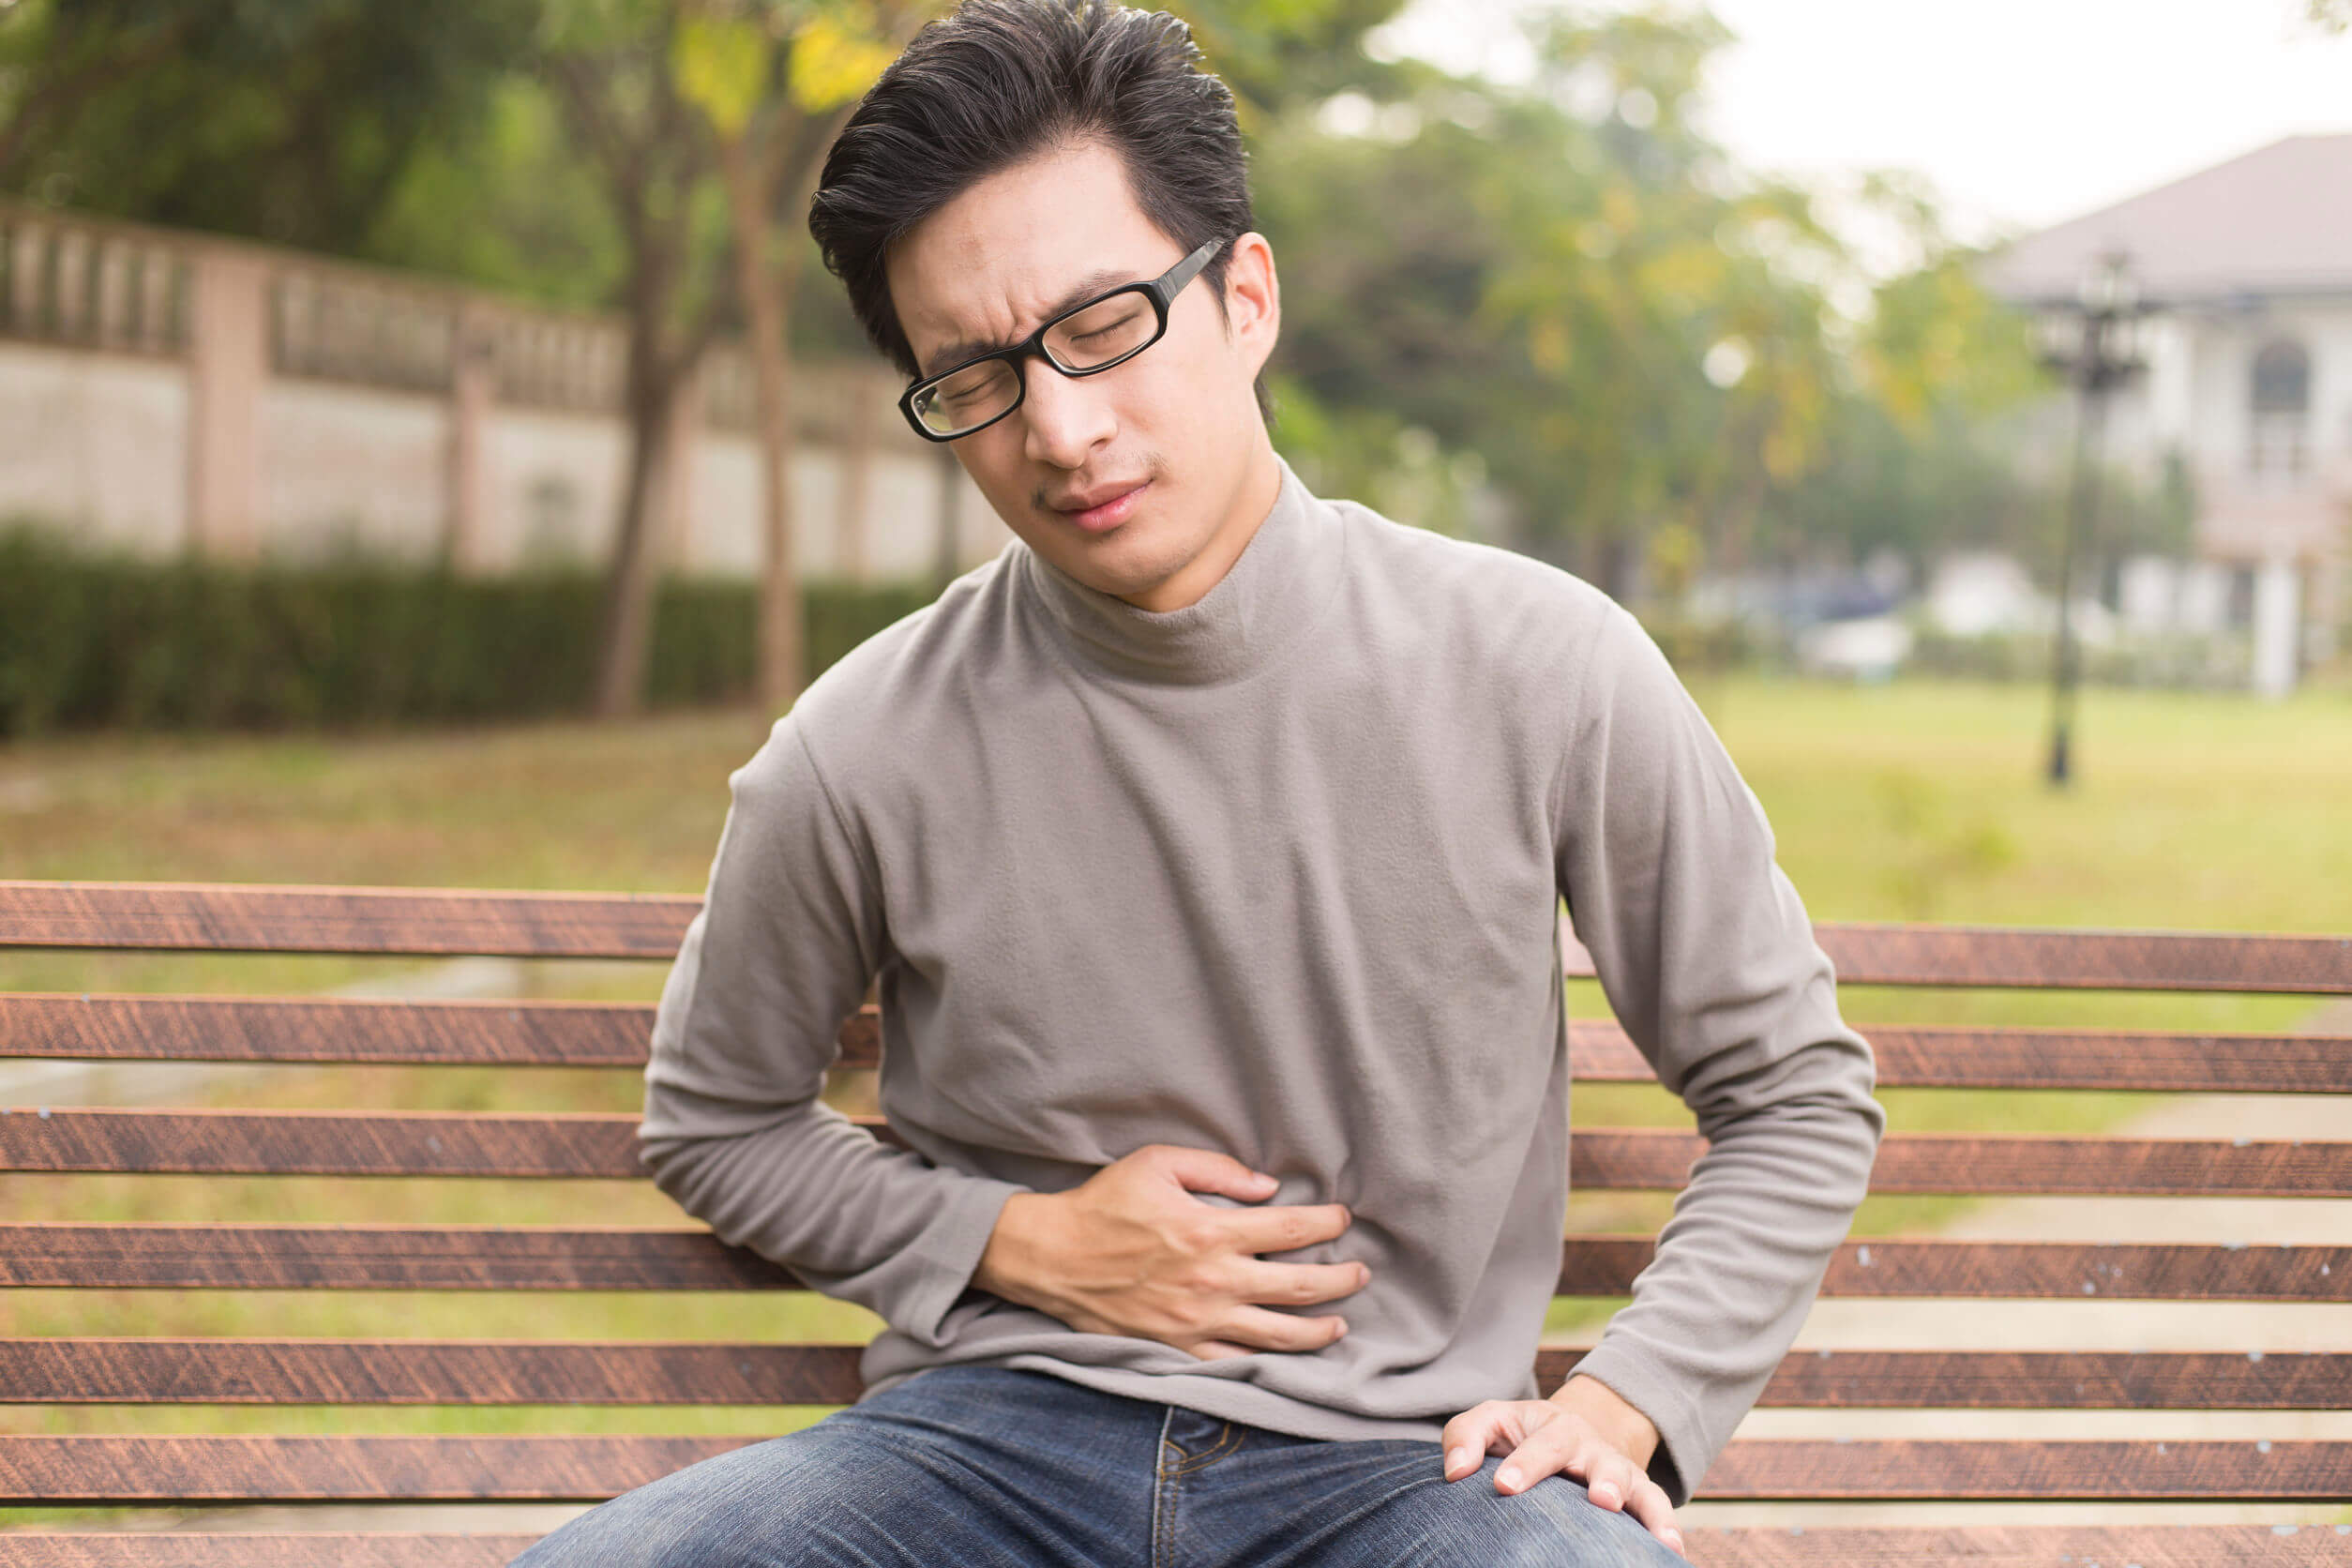 La venlafaxine provoque des troubles gastro-intestinaux relativement fréquemment.